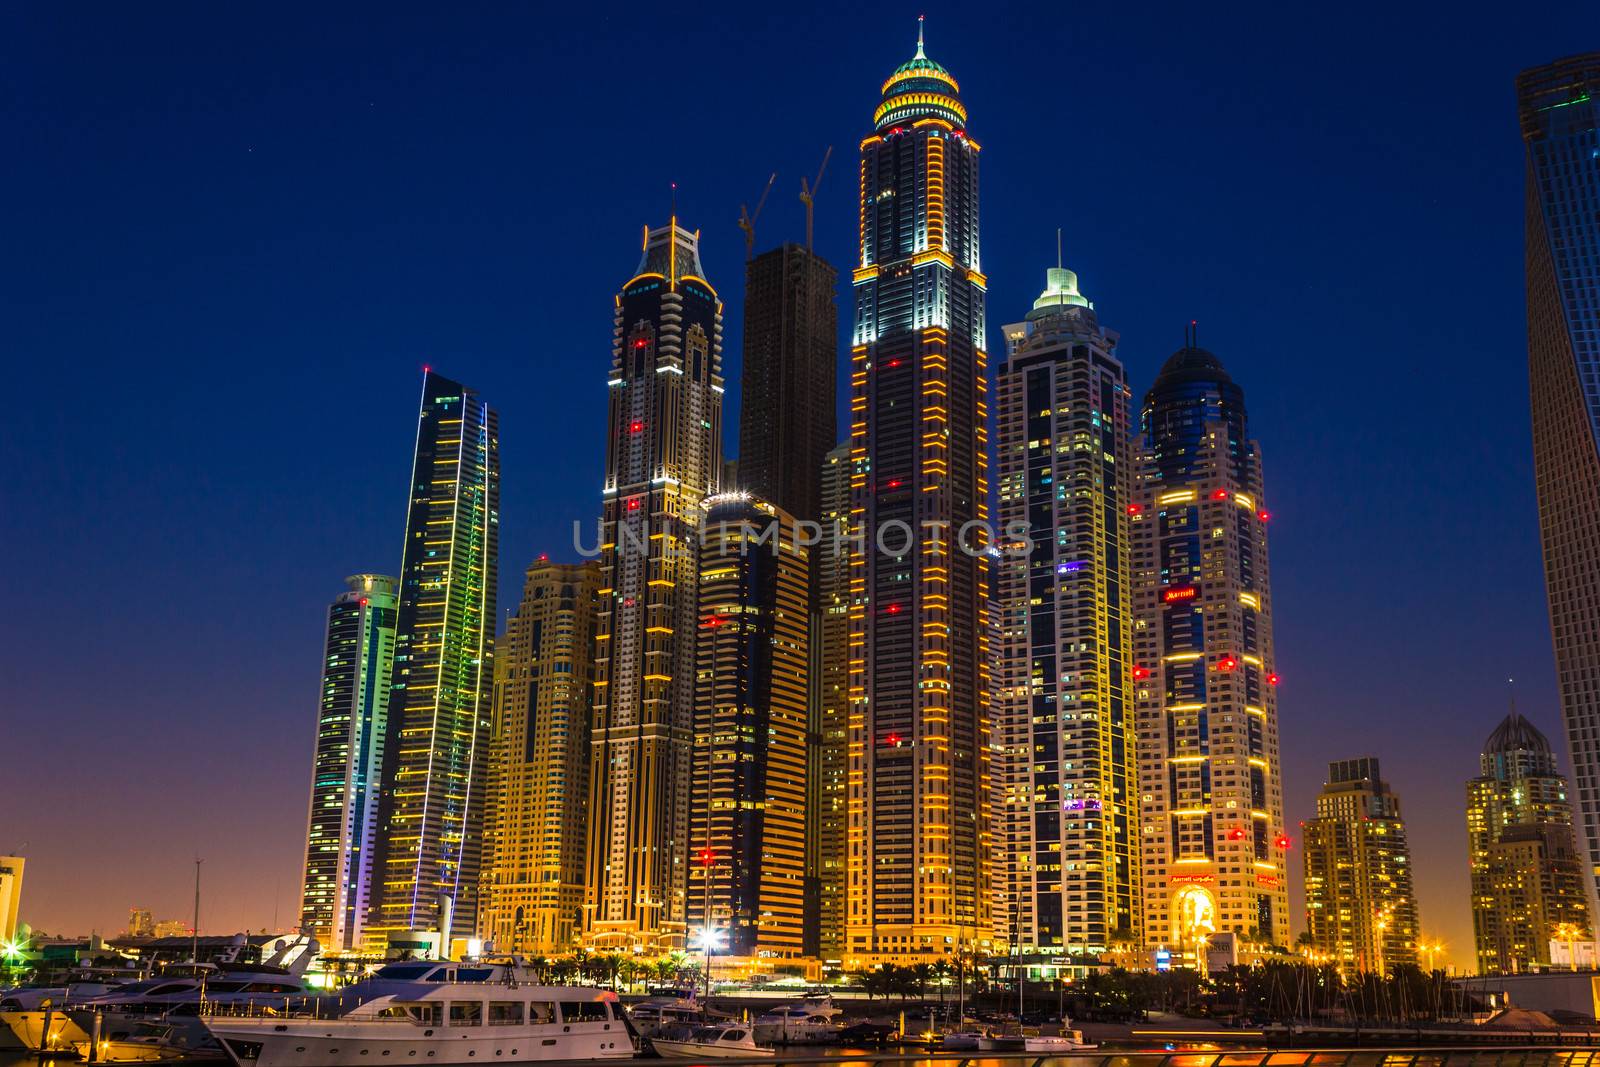 Nightlife in Dubai Marina. UAE. November 14, 2012 by oleg_zhukov